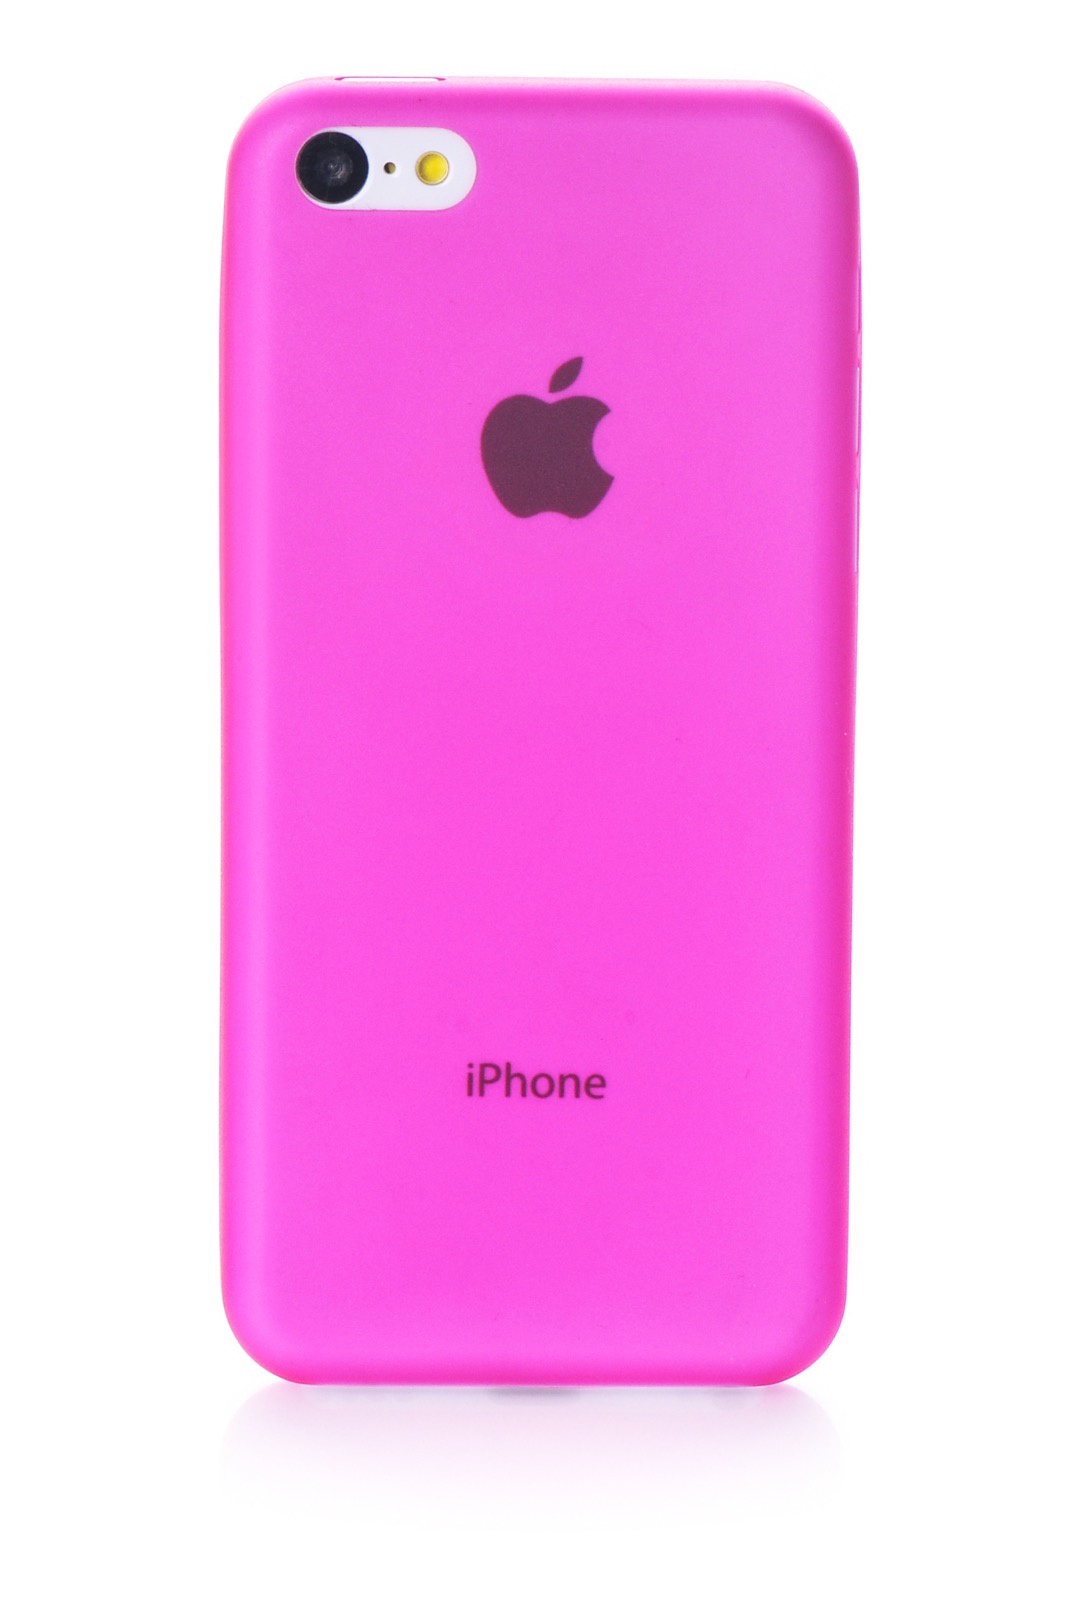 Телефоны айфон розовый. Apple iphone 5c 2013 Pink. Apple iphone 5 розовый. Розовый айфон. Чехол.